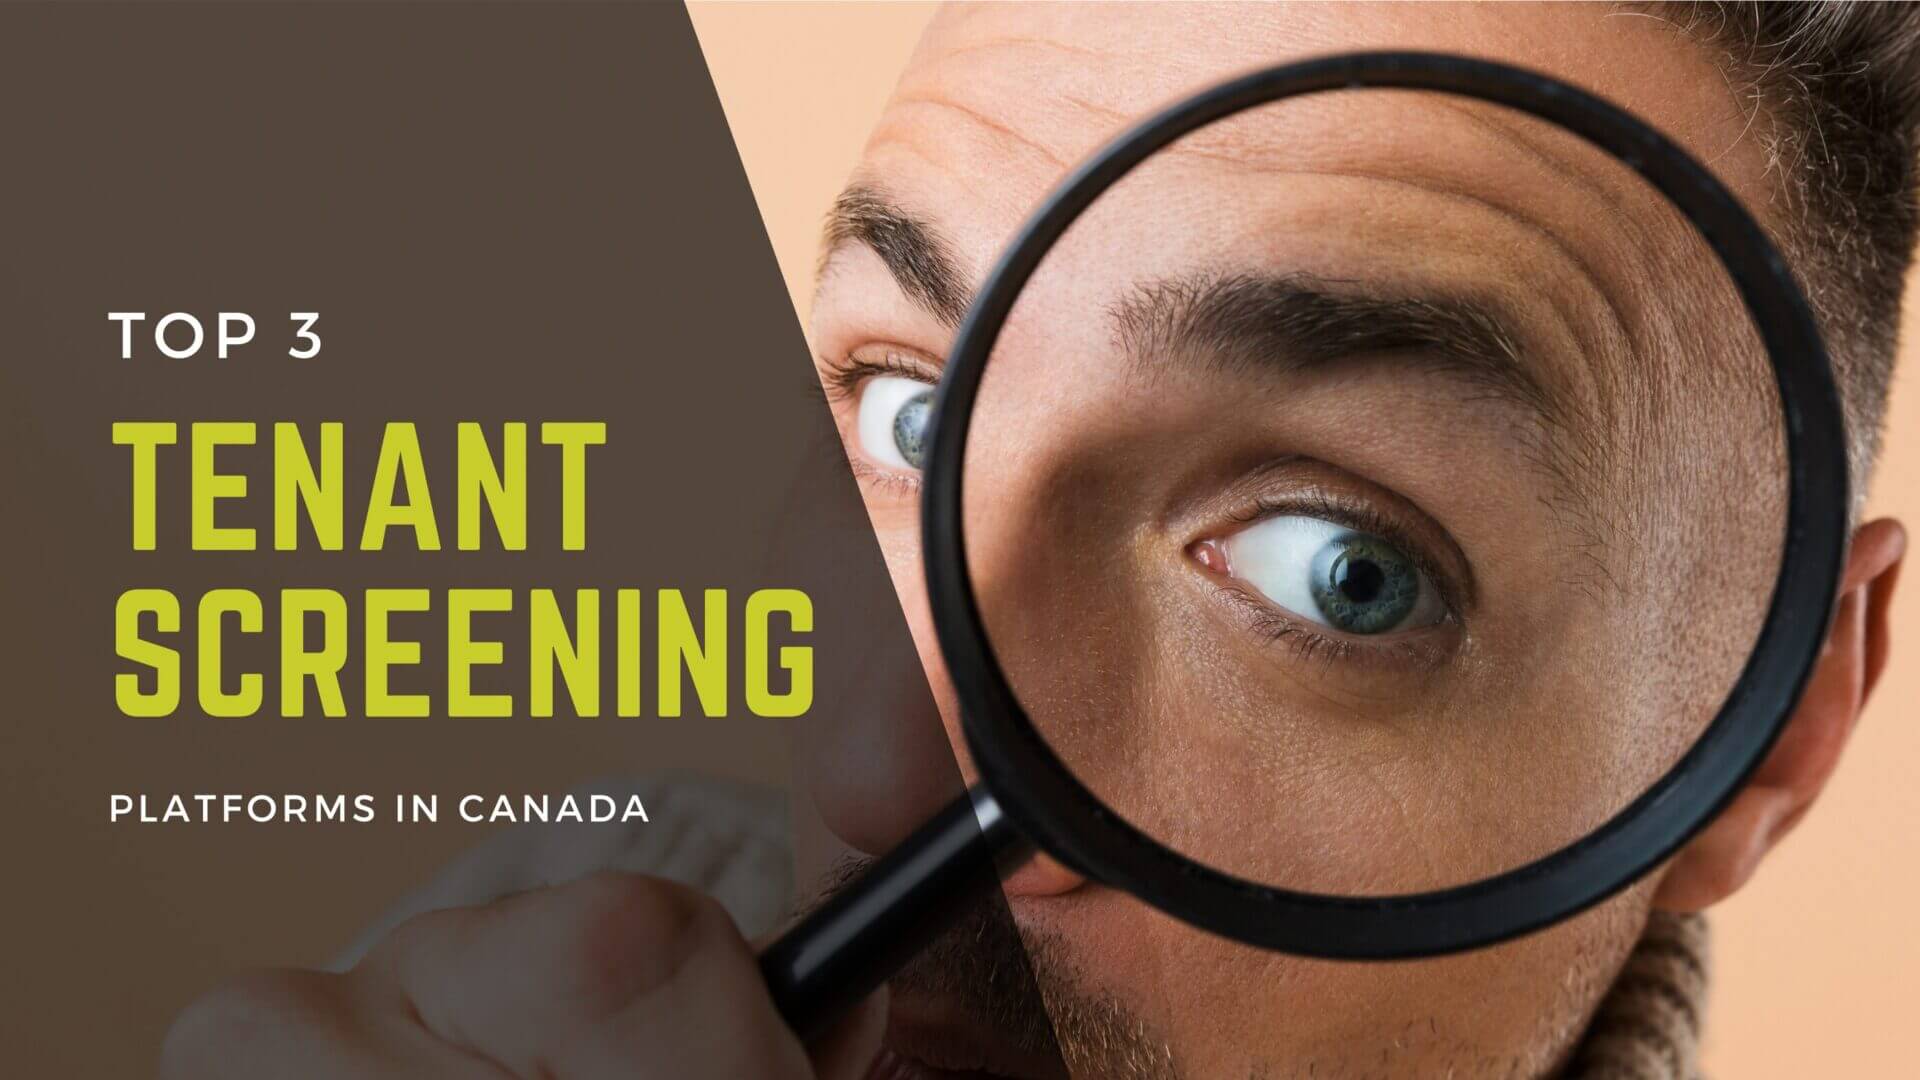 Top 3 Tenant Screening Platforms in Canada